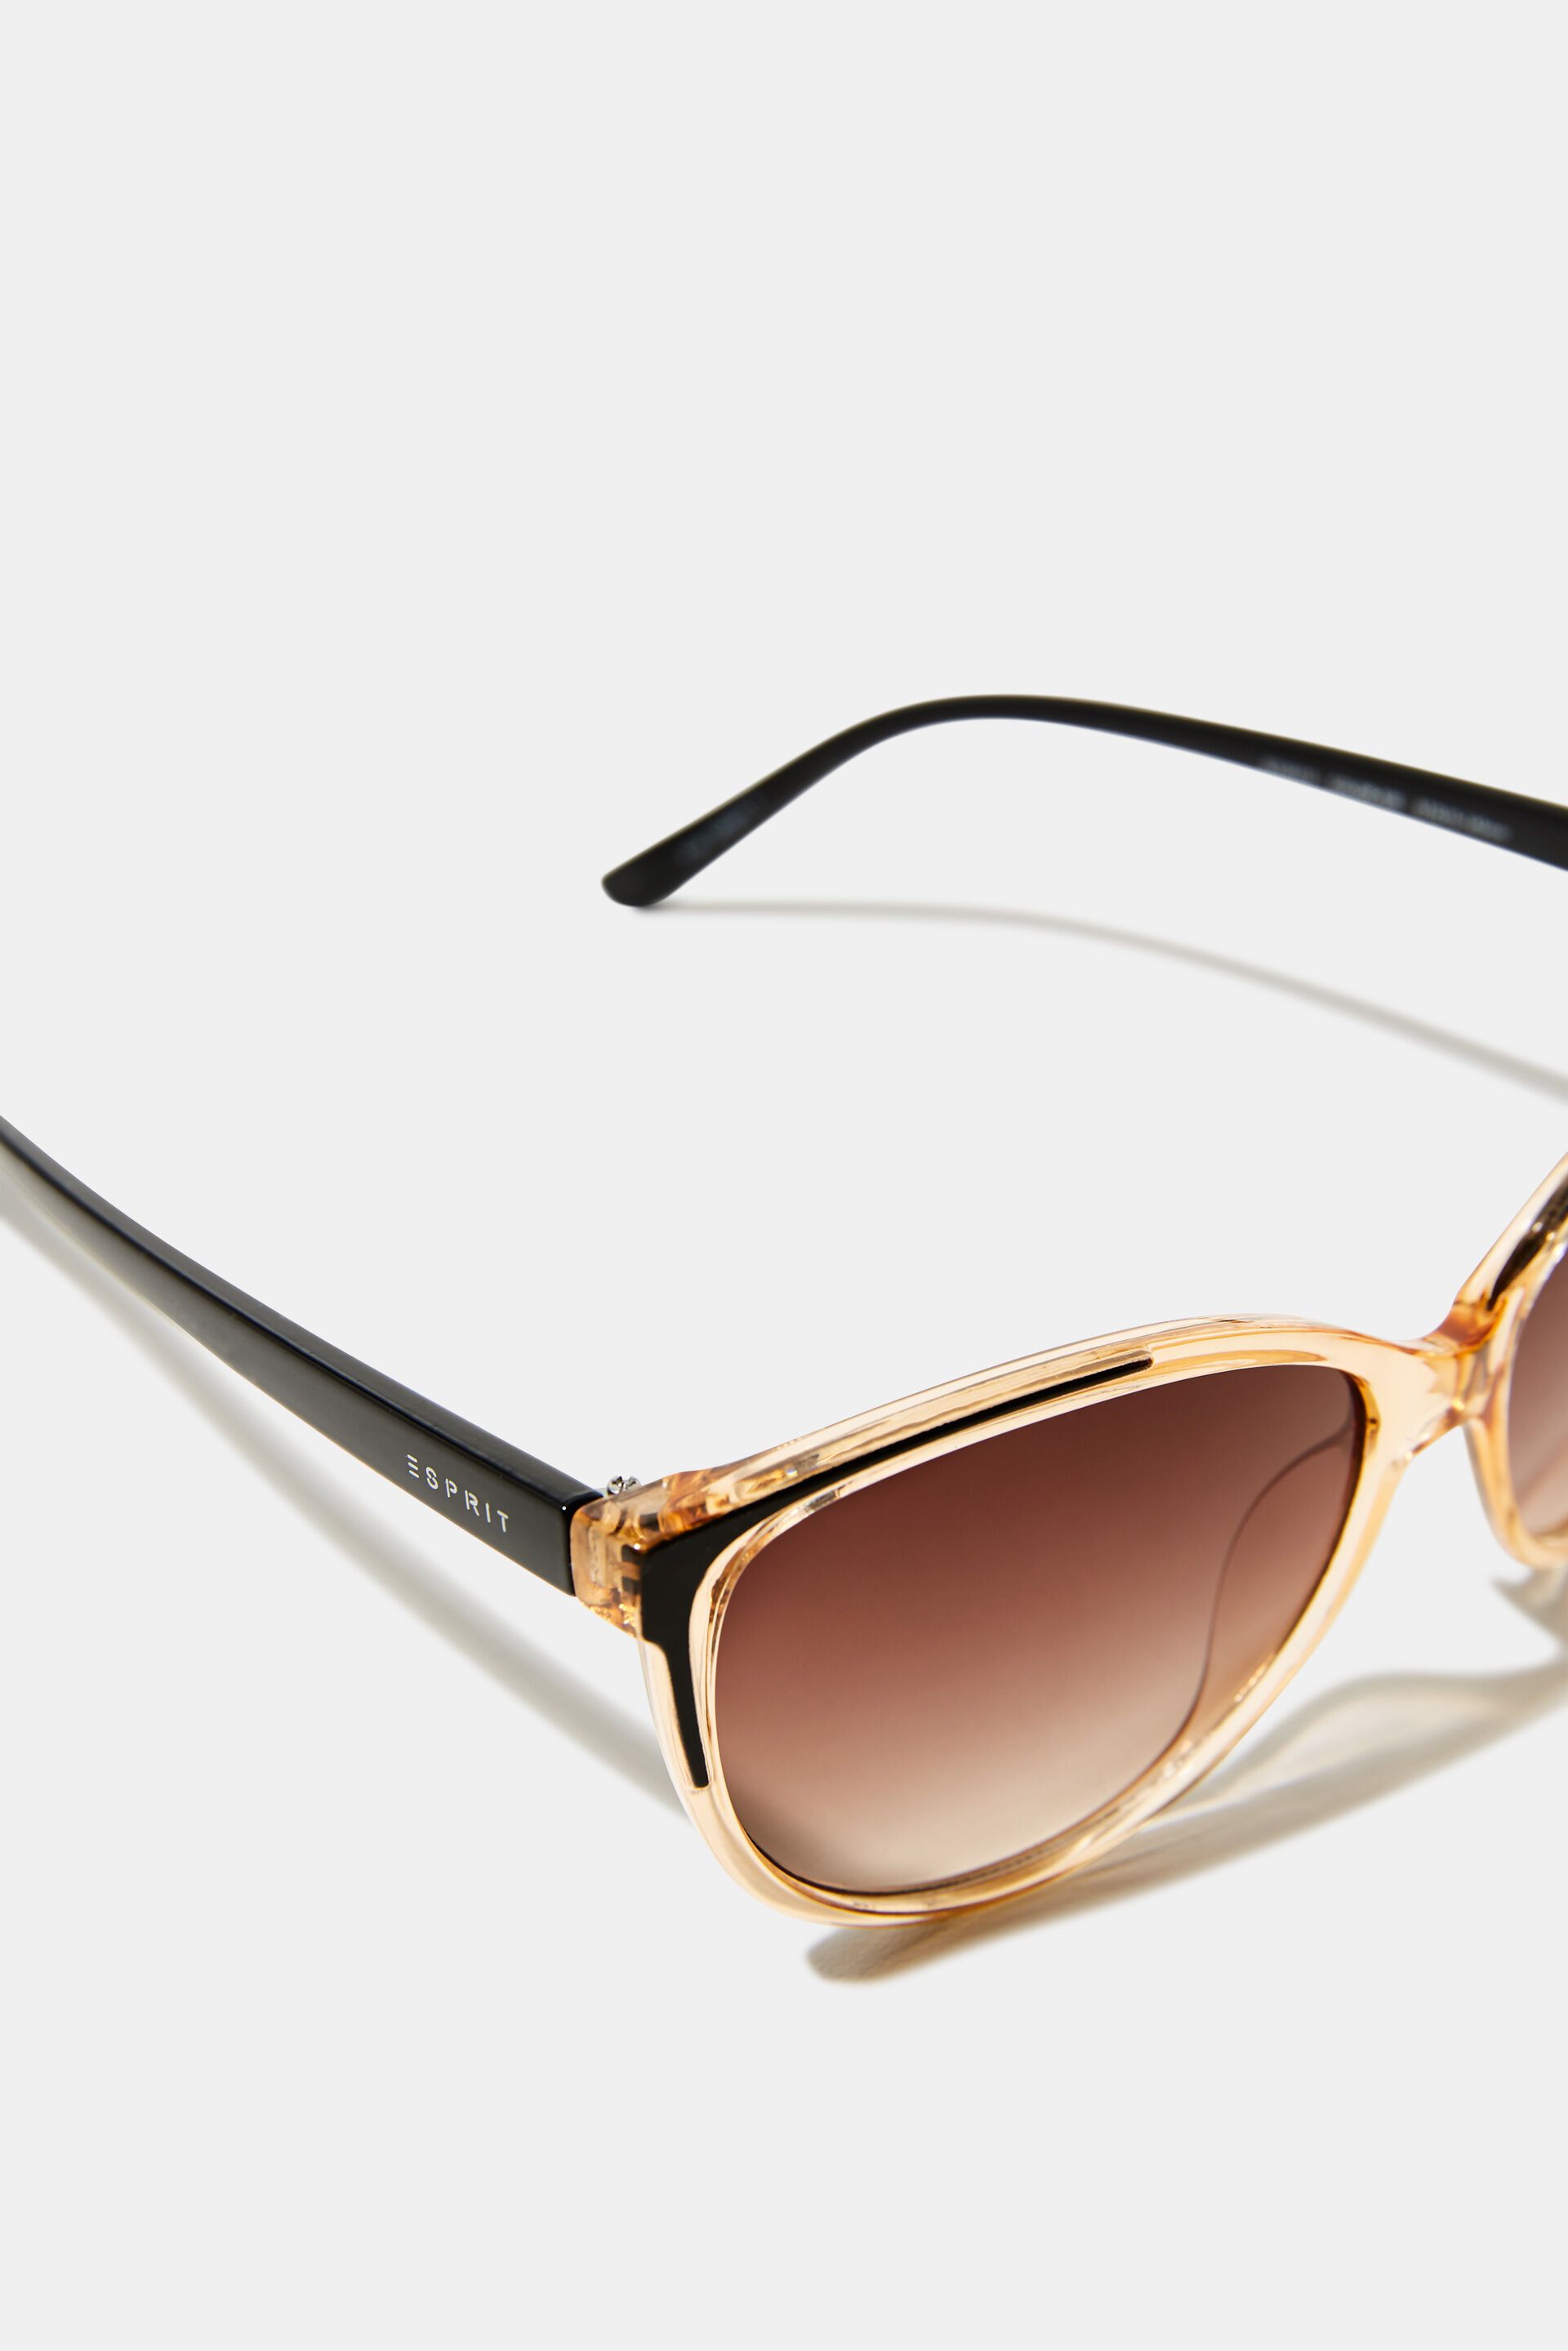 Esprit Online Store Sonnenbrille mit Rahmen transparentem